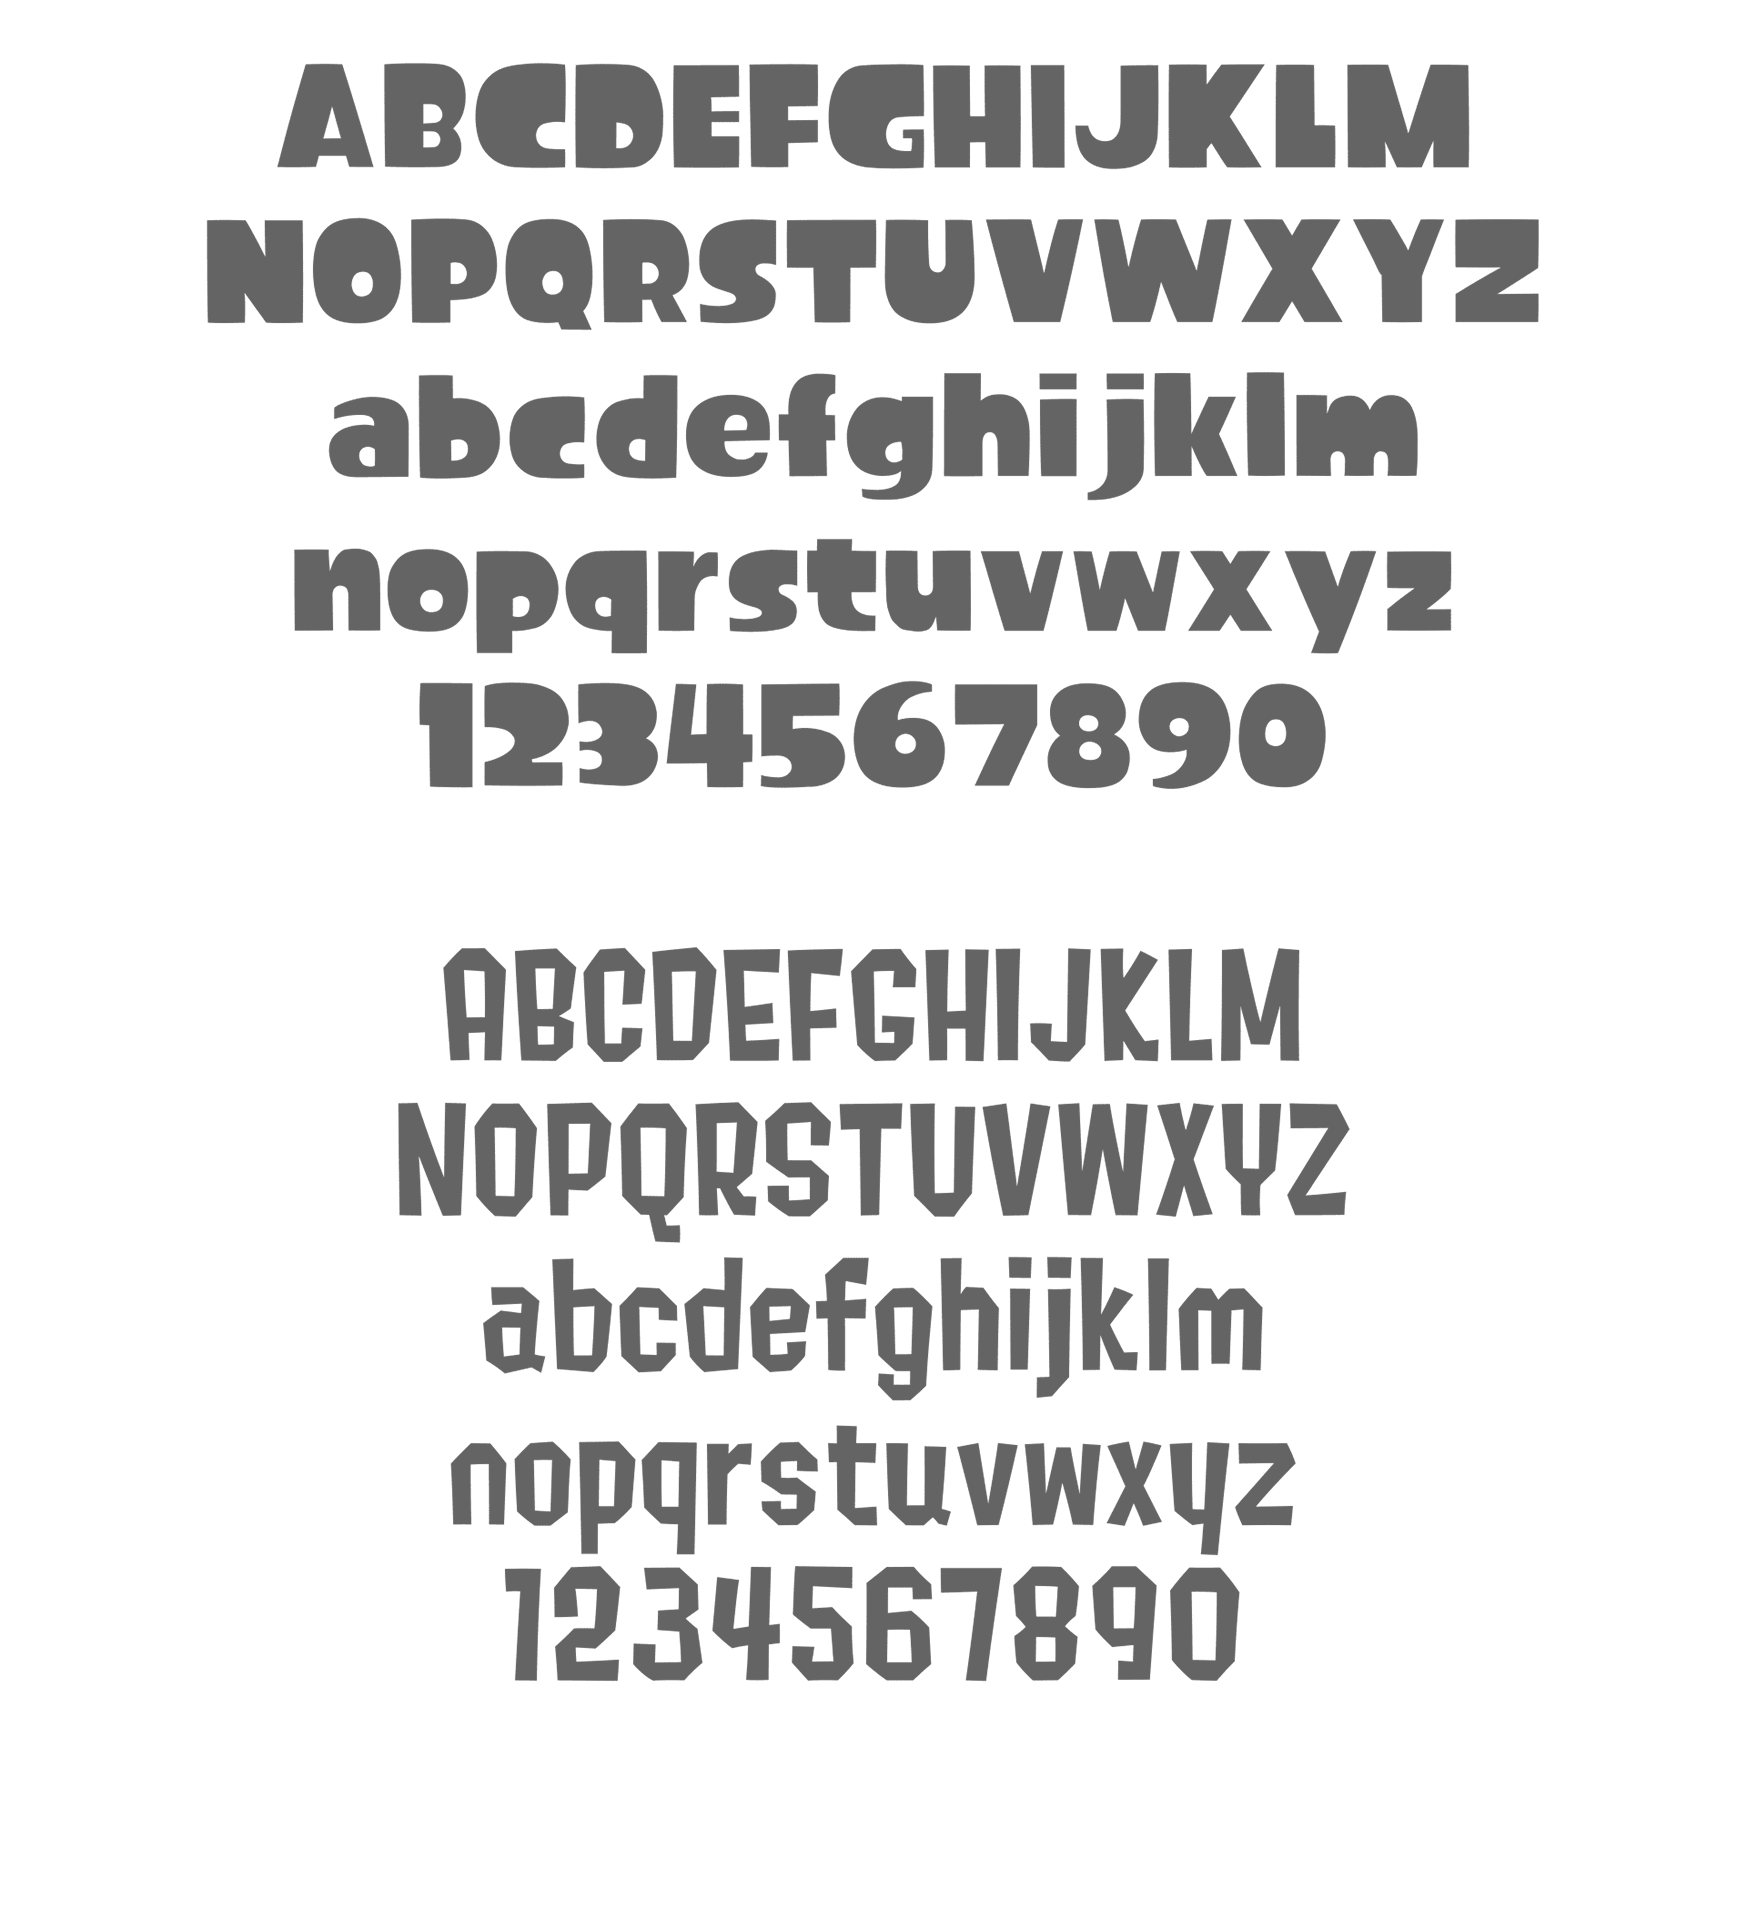 上：Splatoon 标题字体，下：Splatoon 正文字体